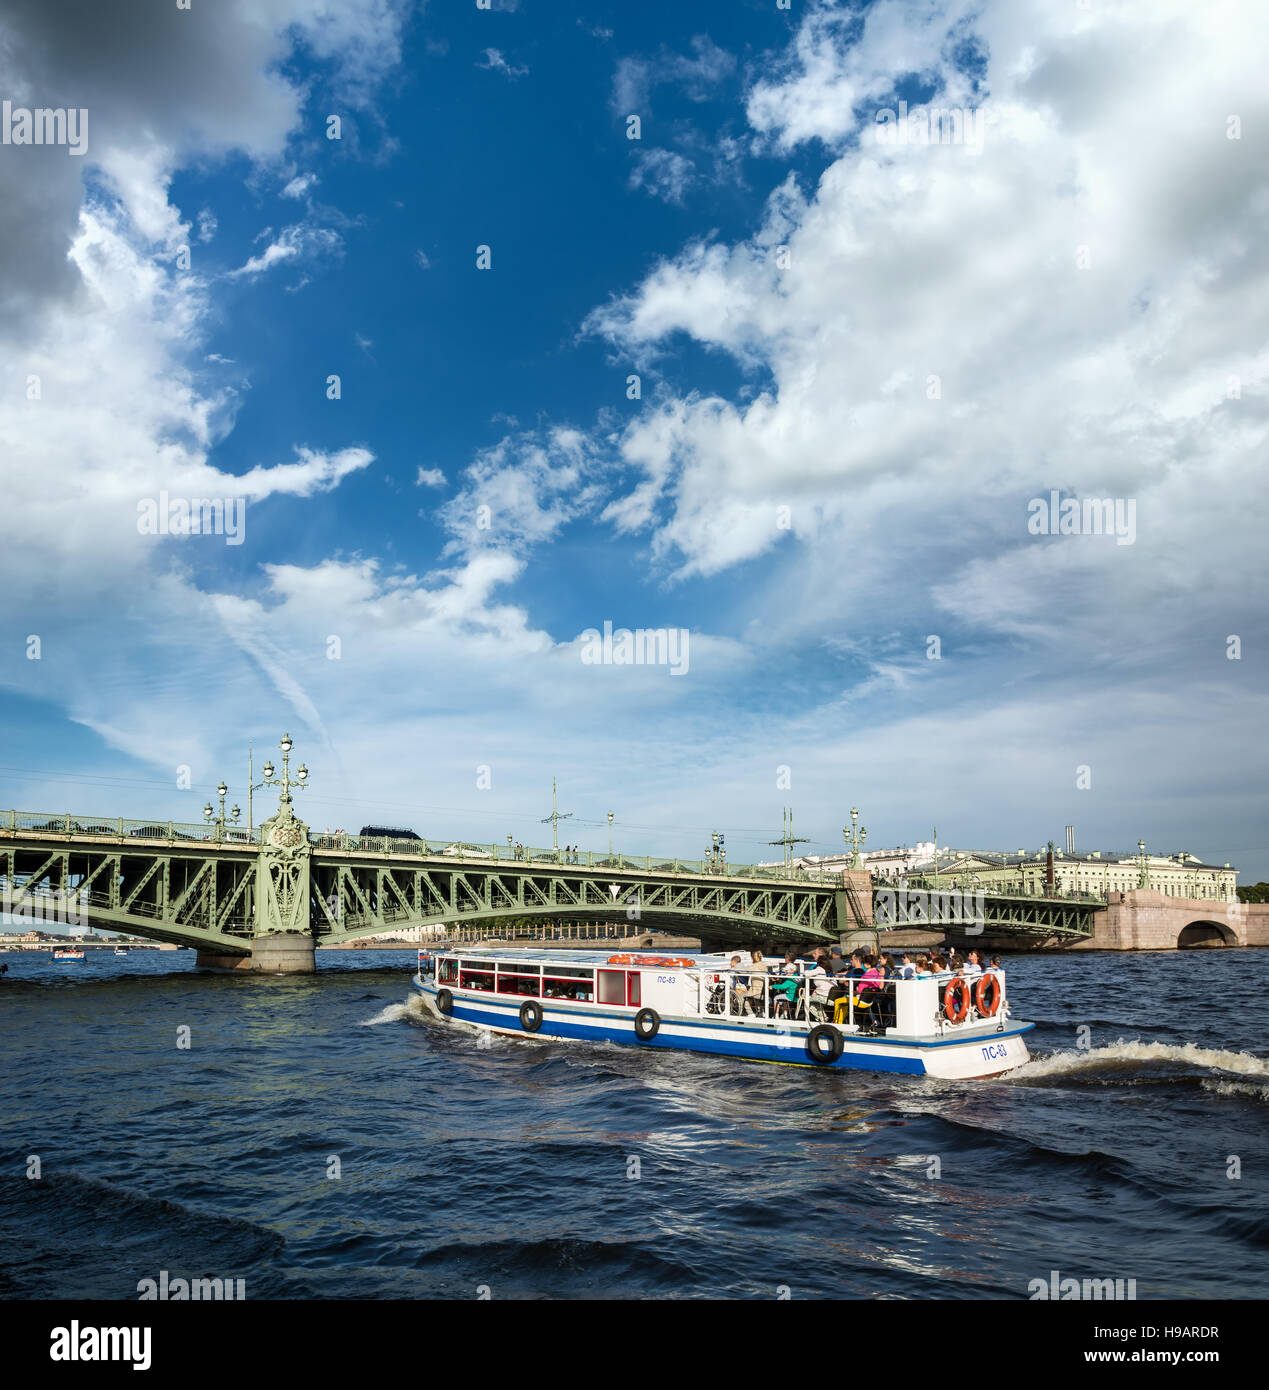 ST. PETERSBURG, Russie - le 14 juillet 2016 : Voile flotte sur l'arrière-plan du pont-levis à Saint-Pétersbourg. Banque D'Images